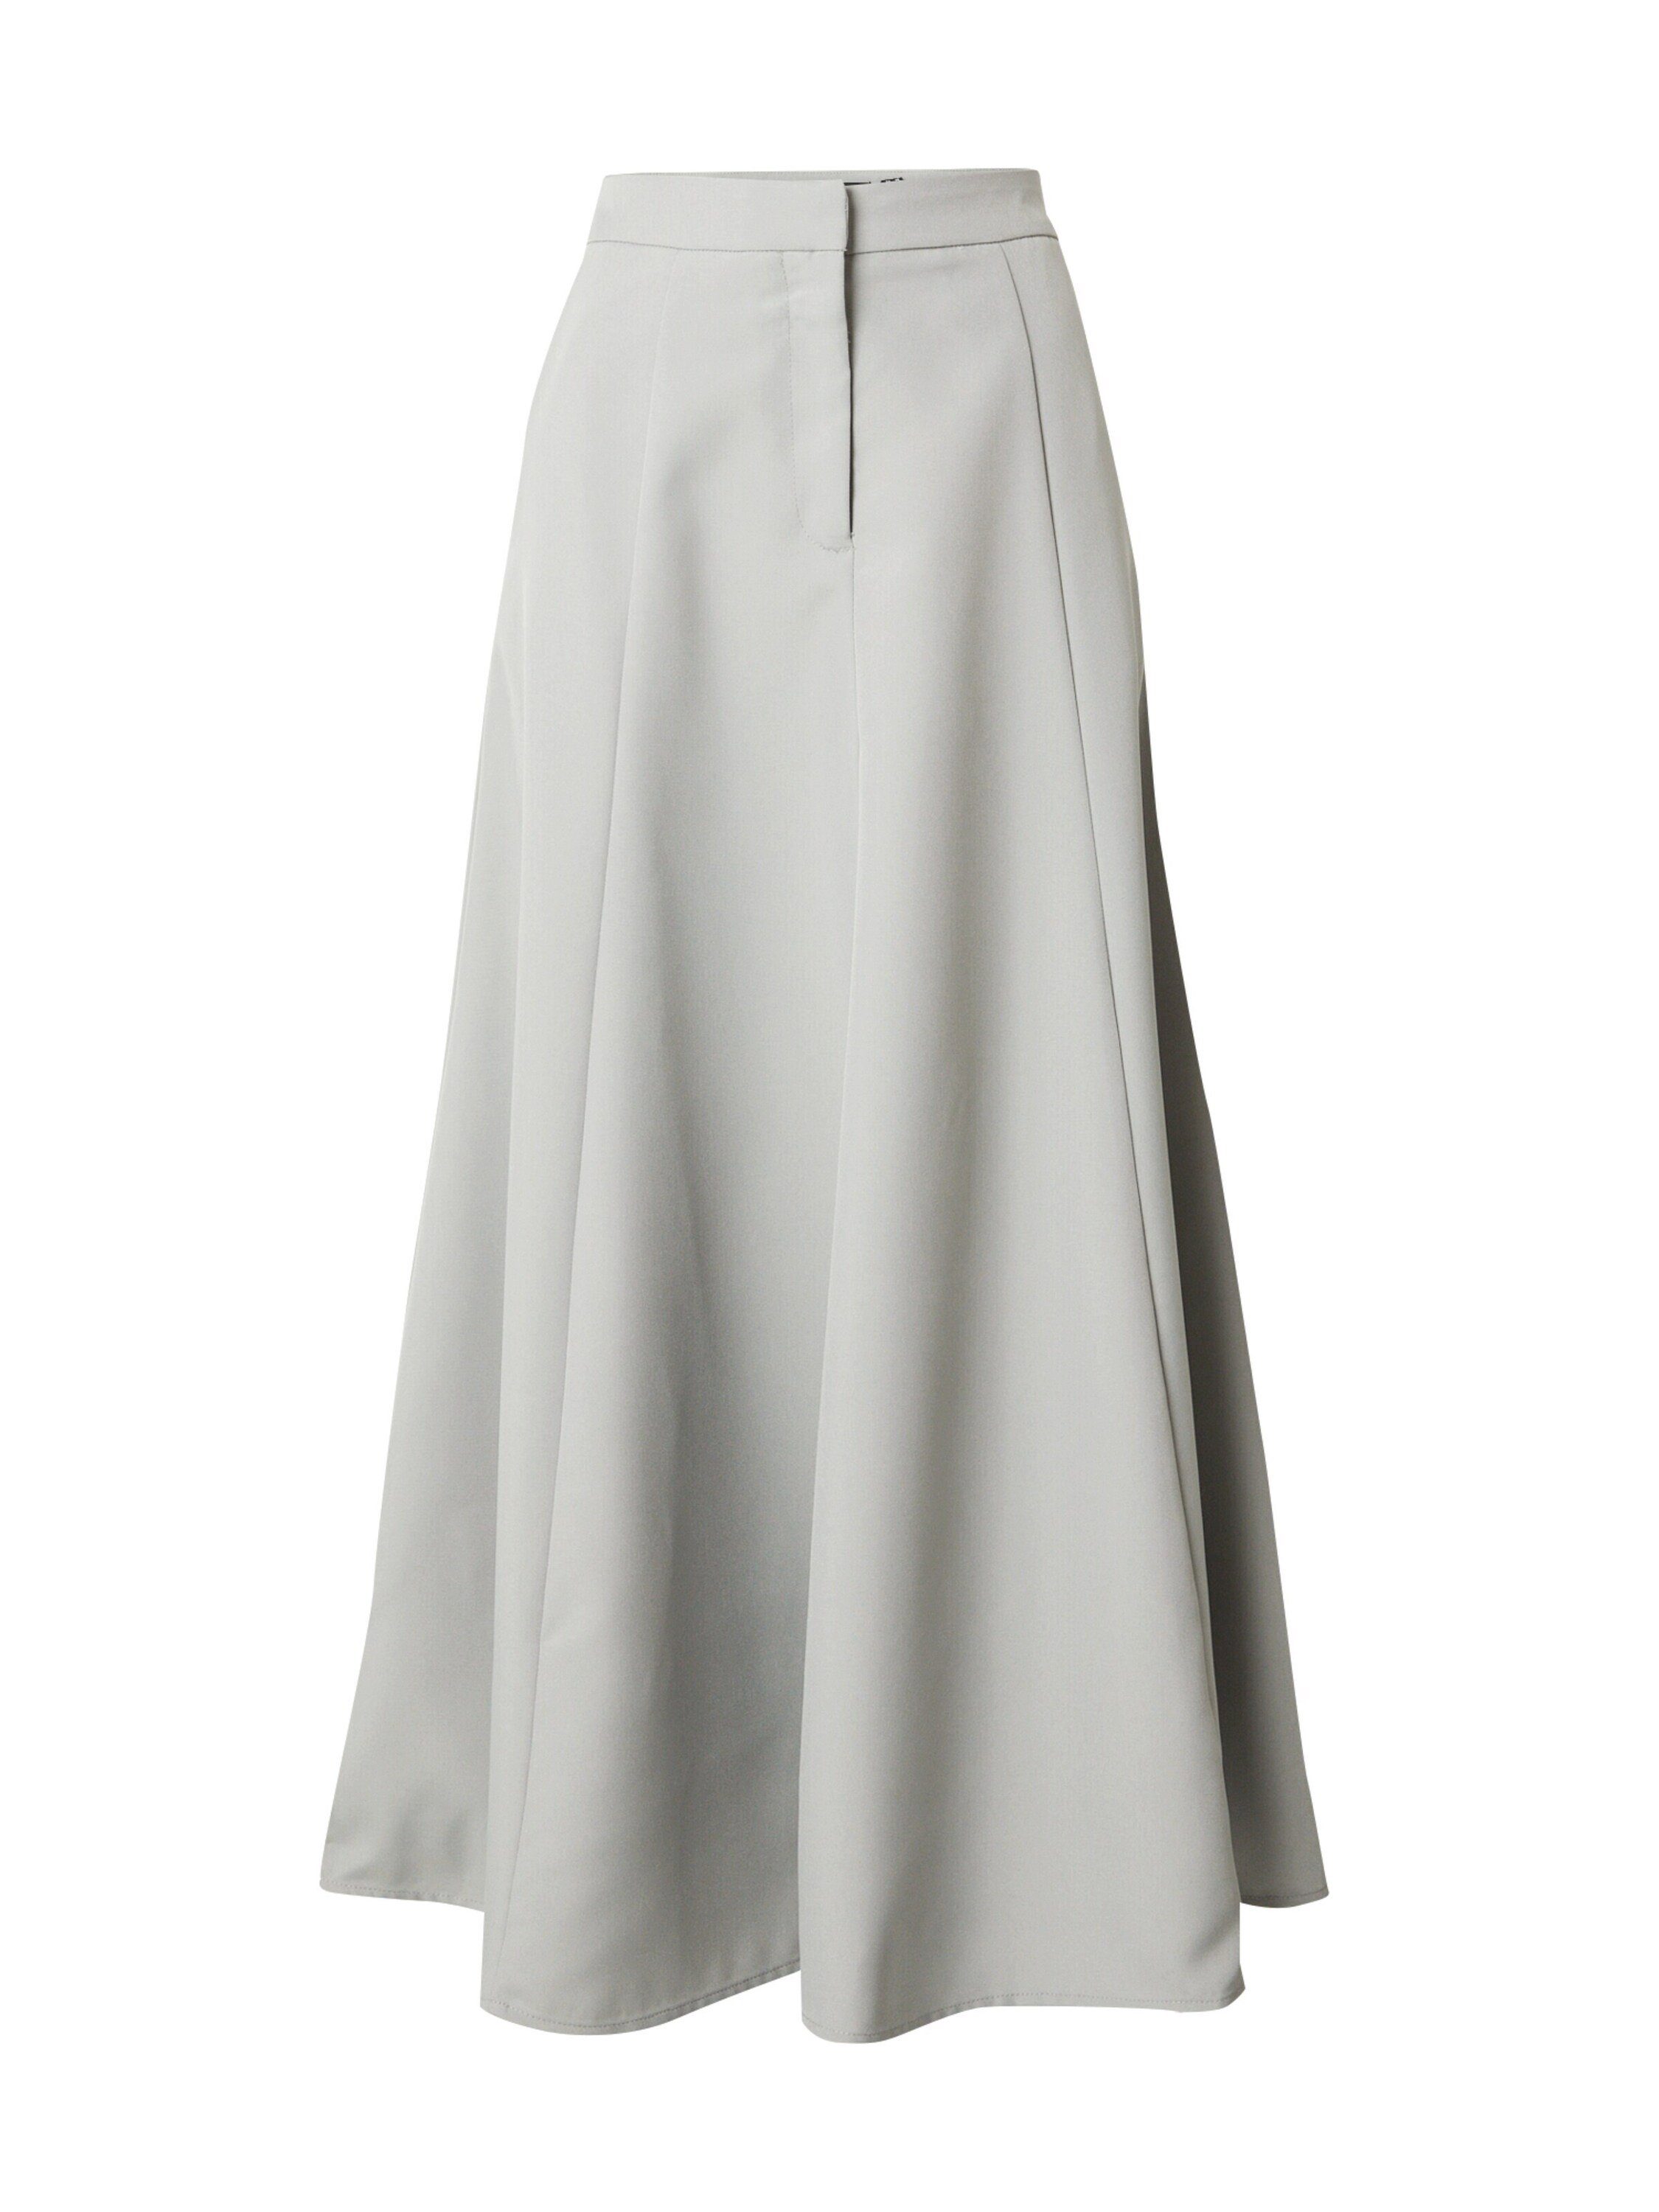 MbyM Röcke für Damen online kaufen | OTTO